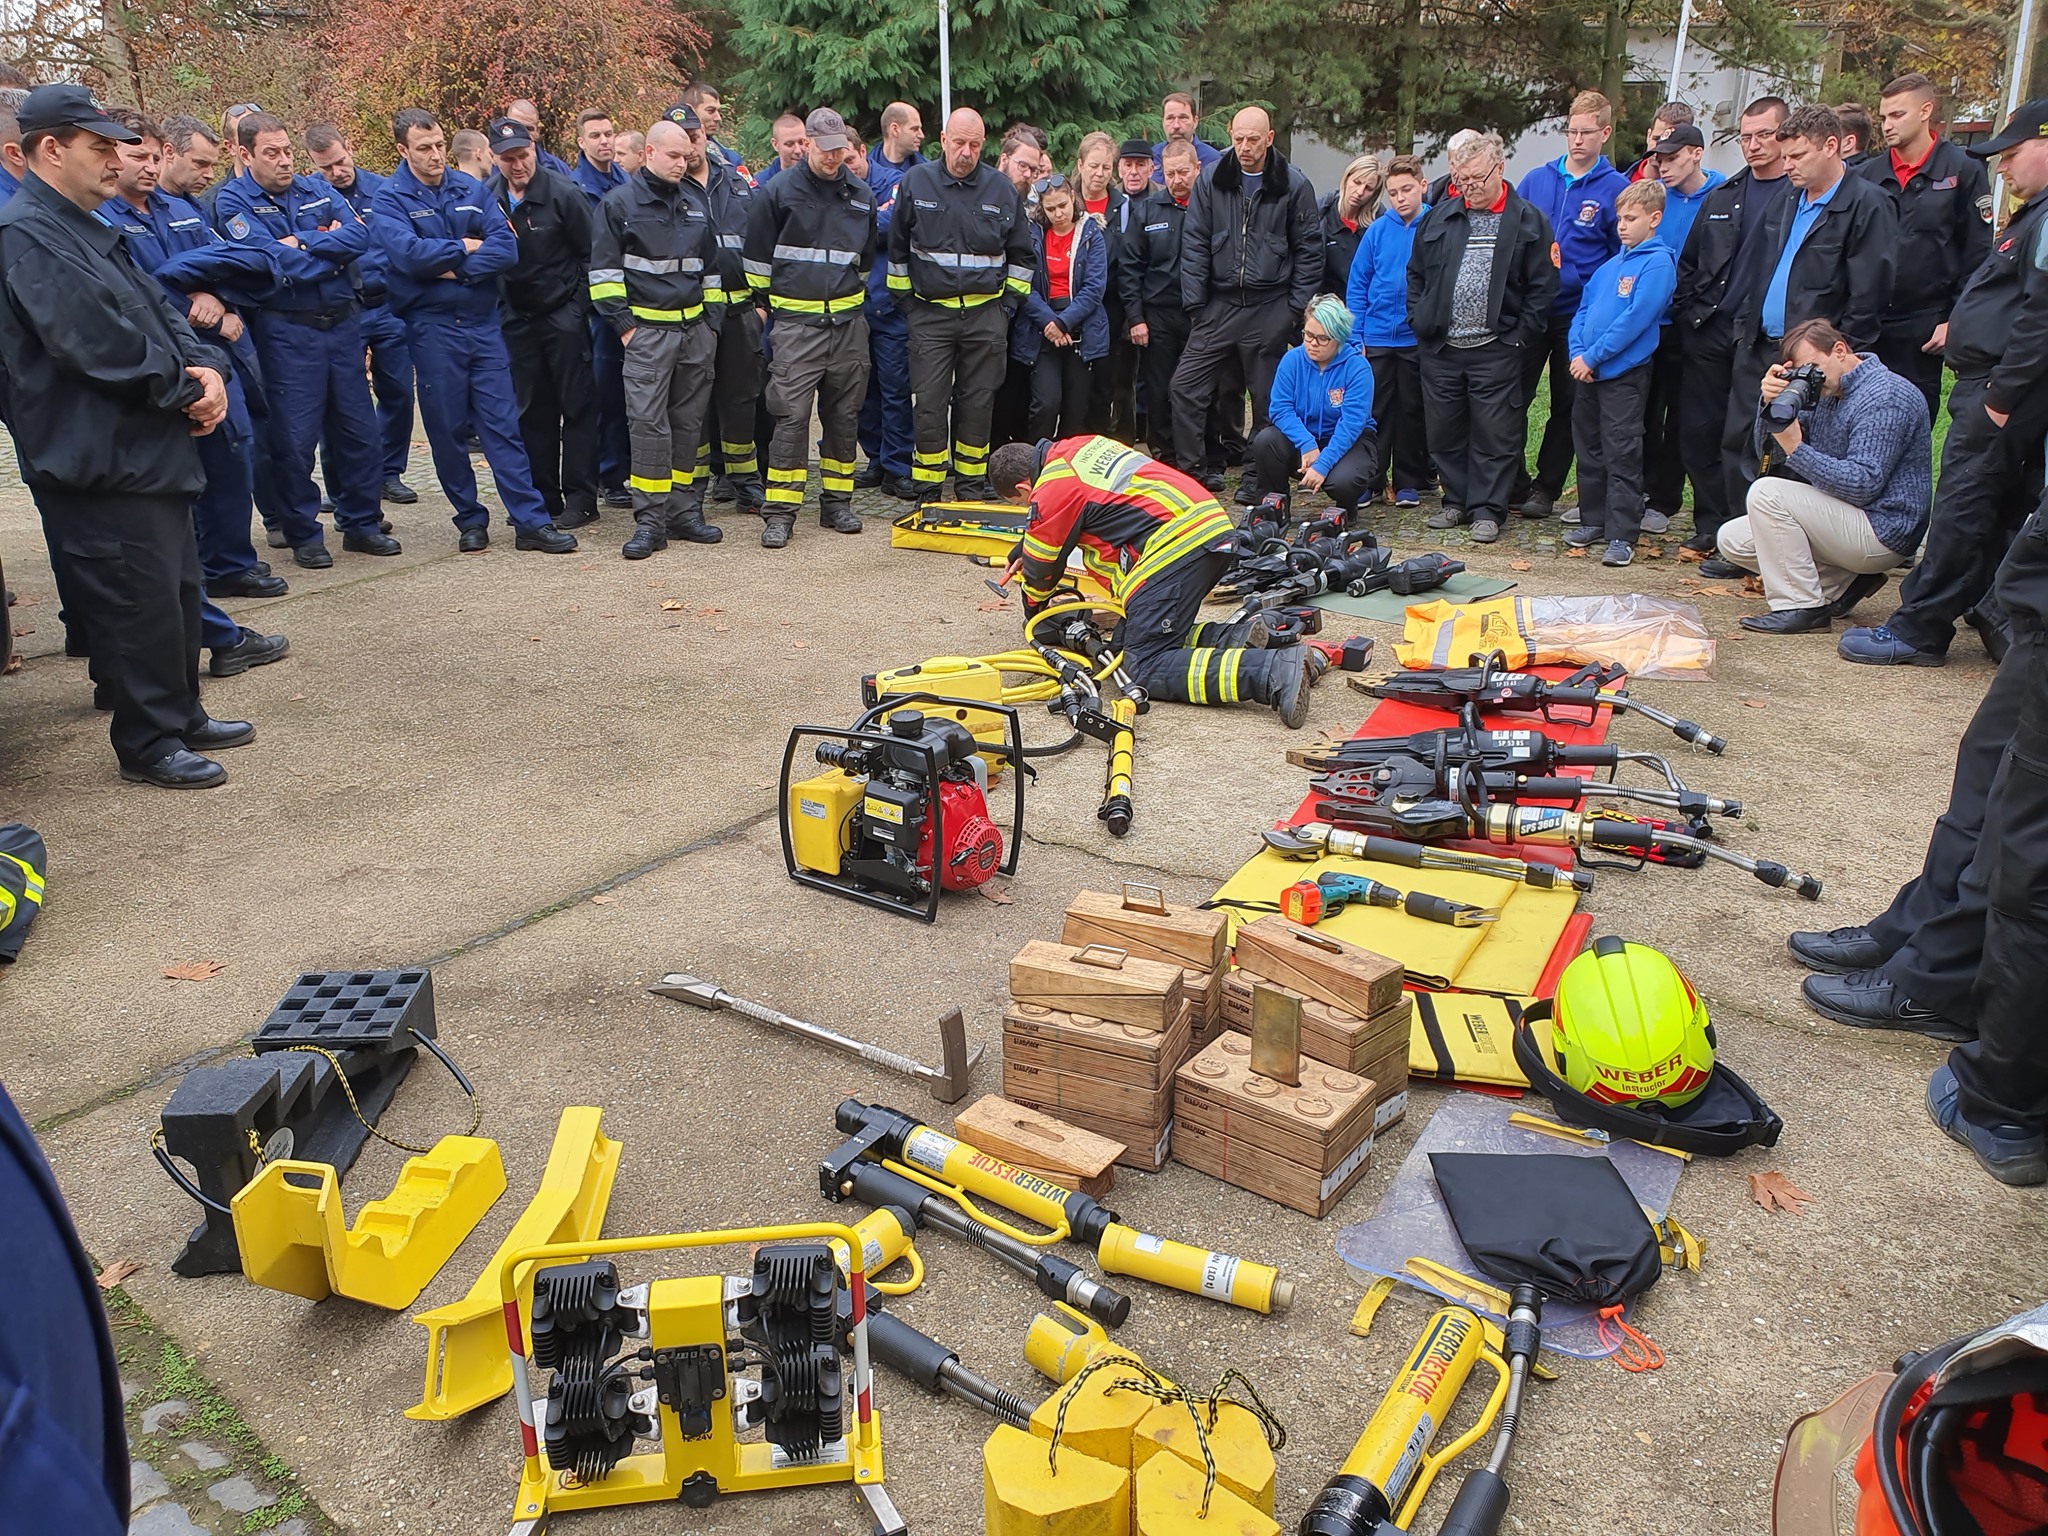 Önkéntes tűzoltók továbbképzése kezdődik ma Udvarhelyszéken: A roncsvágó használatától a kihűlés elleni védelemig